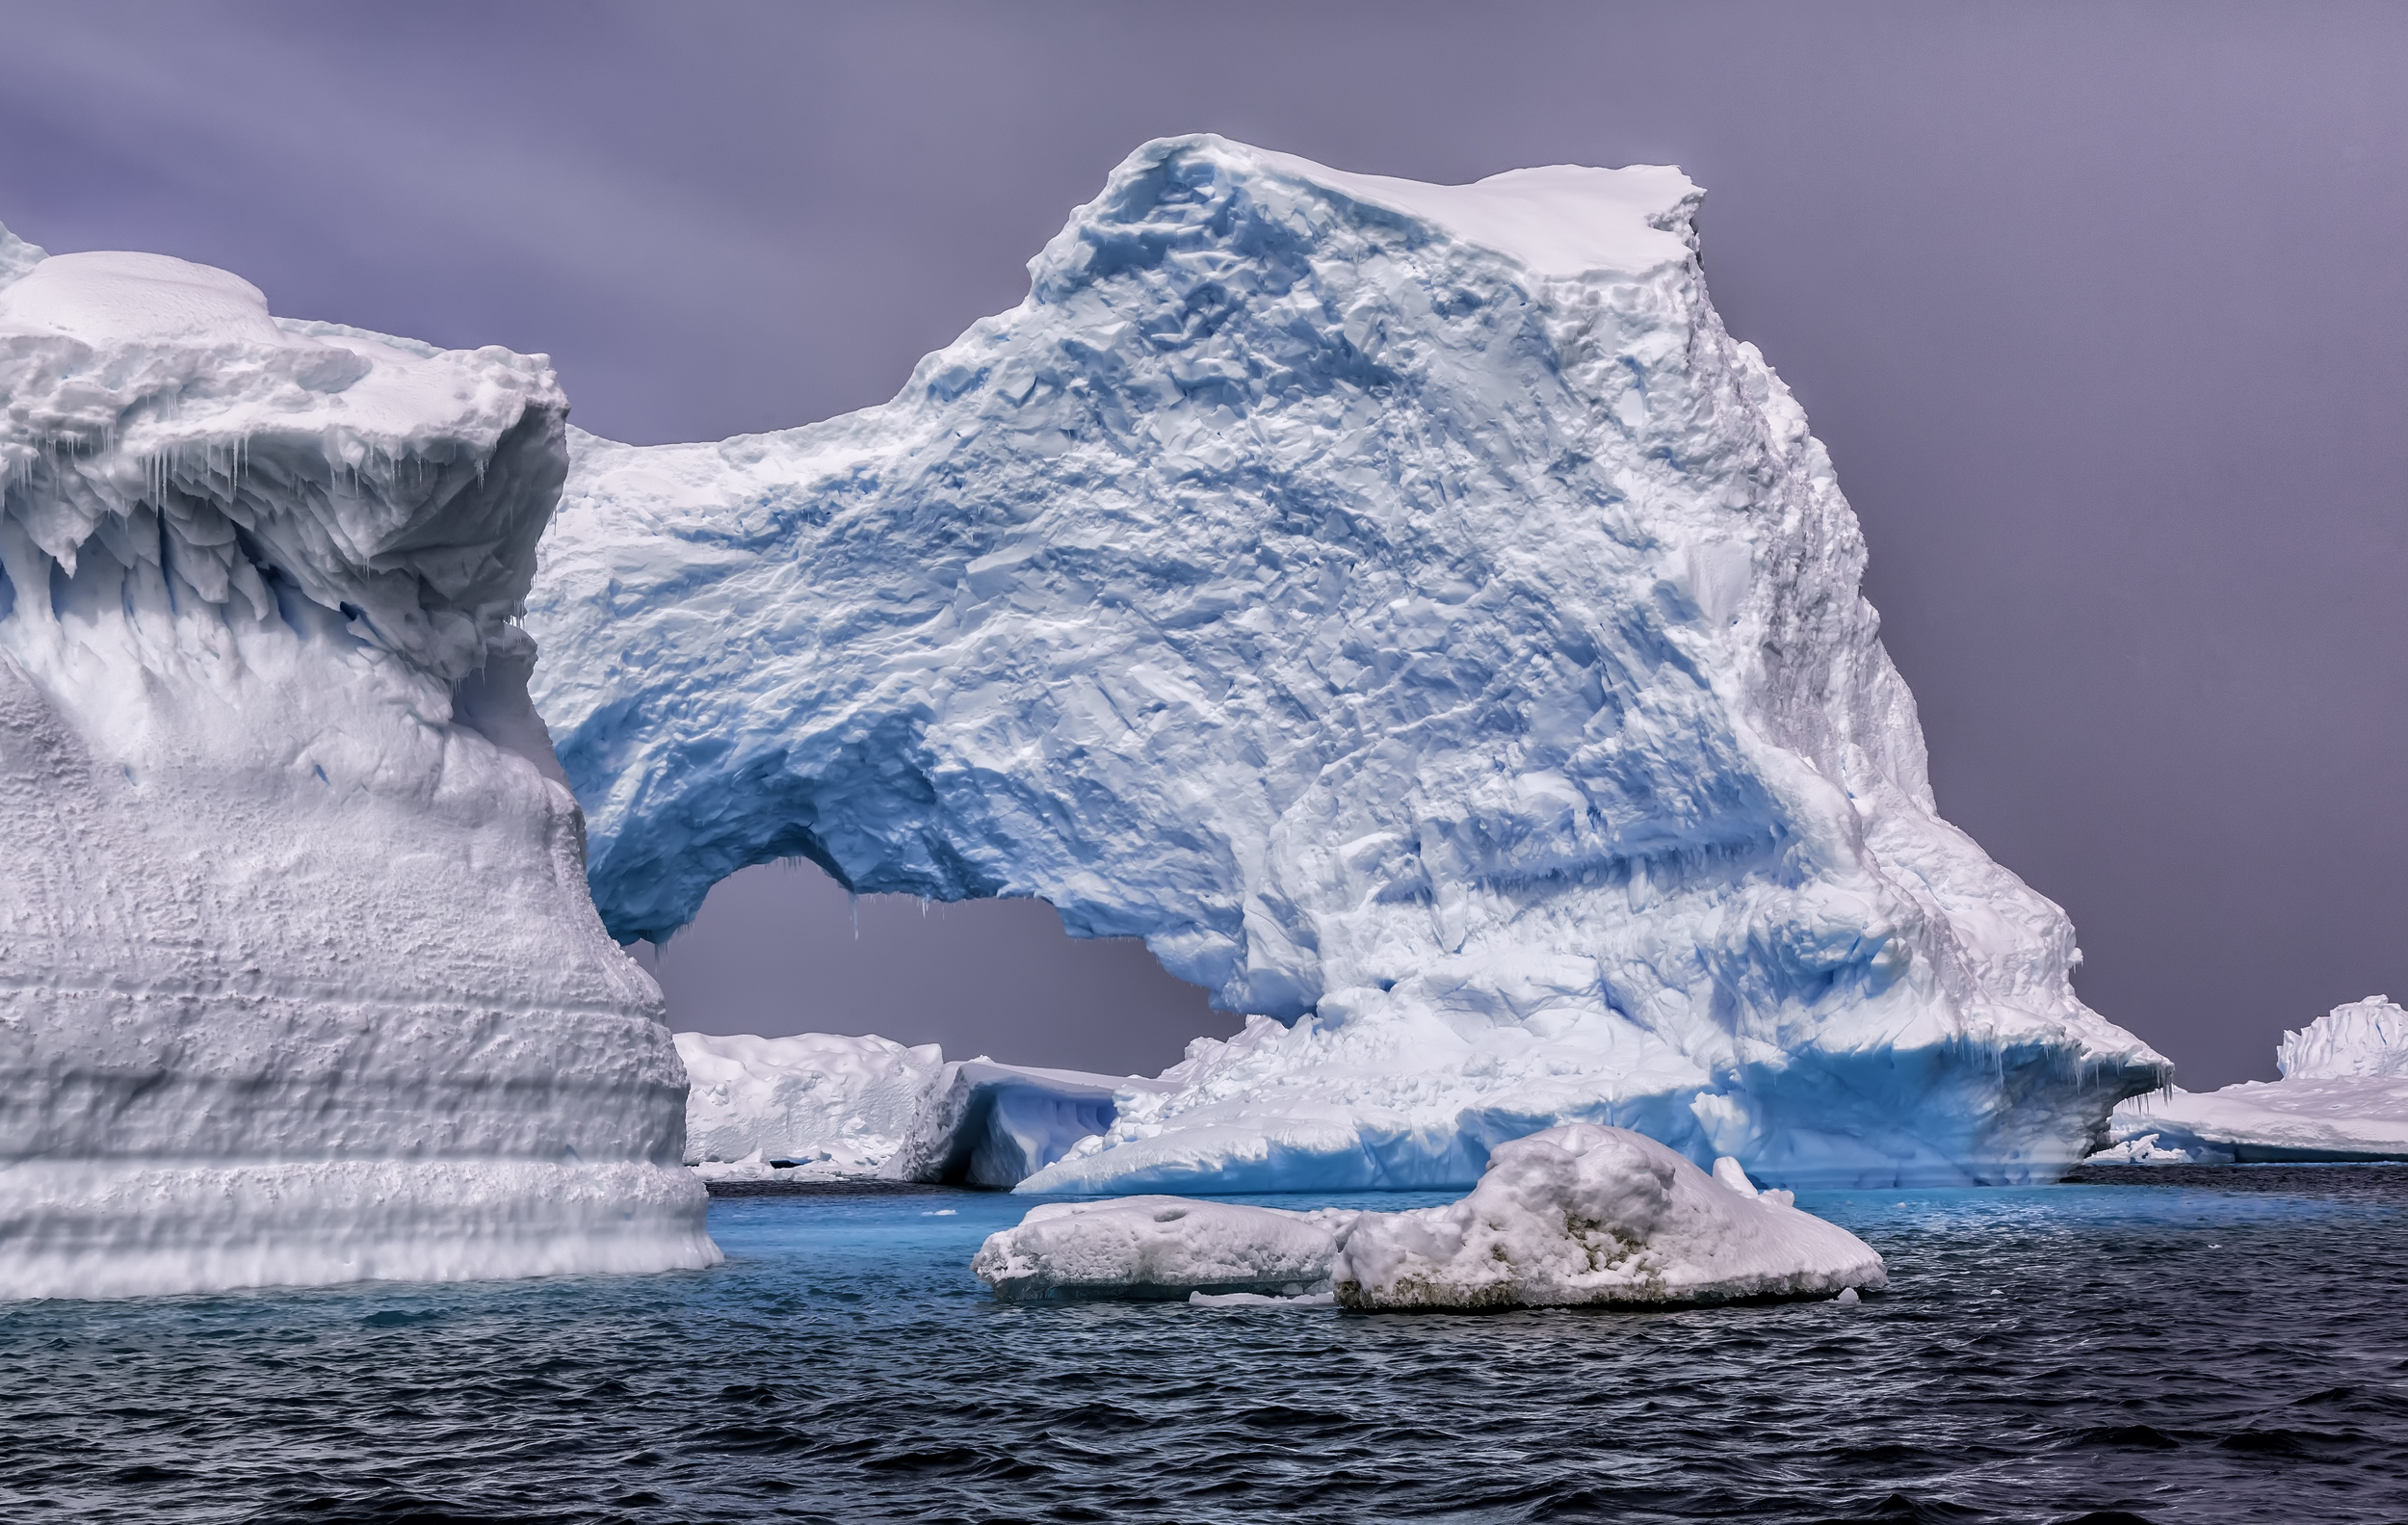 Южный океан г. Покровные ледники Антарктиды. Антарктида ледяной материк. Айсберги Антарктиды. Антарктида (материк) ледники Антарктиды.